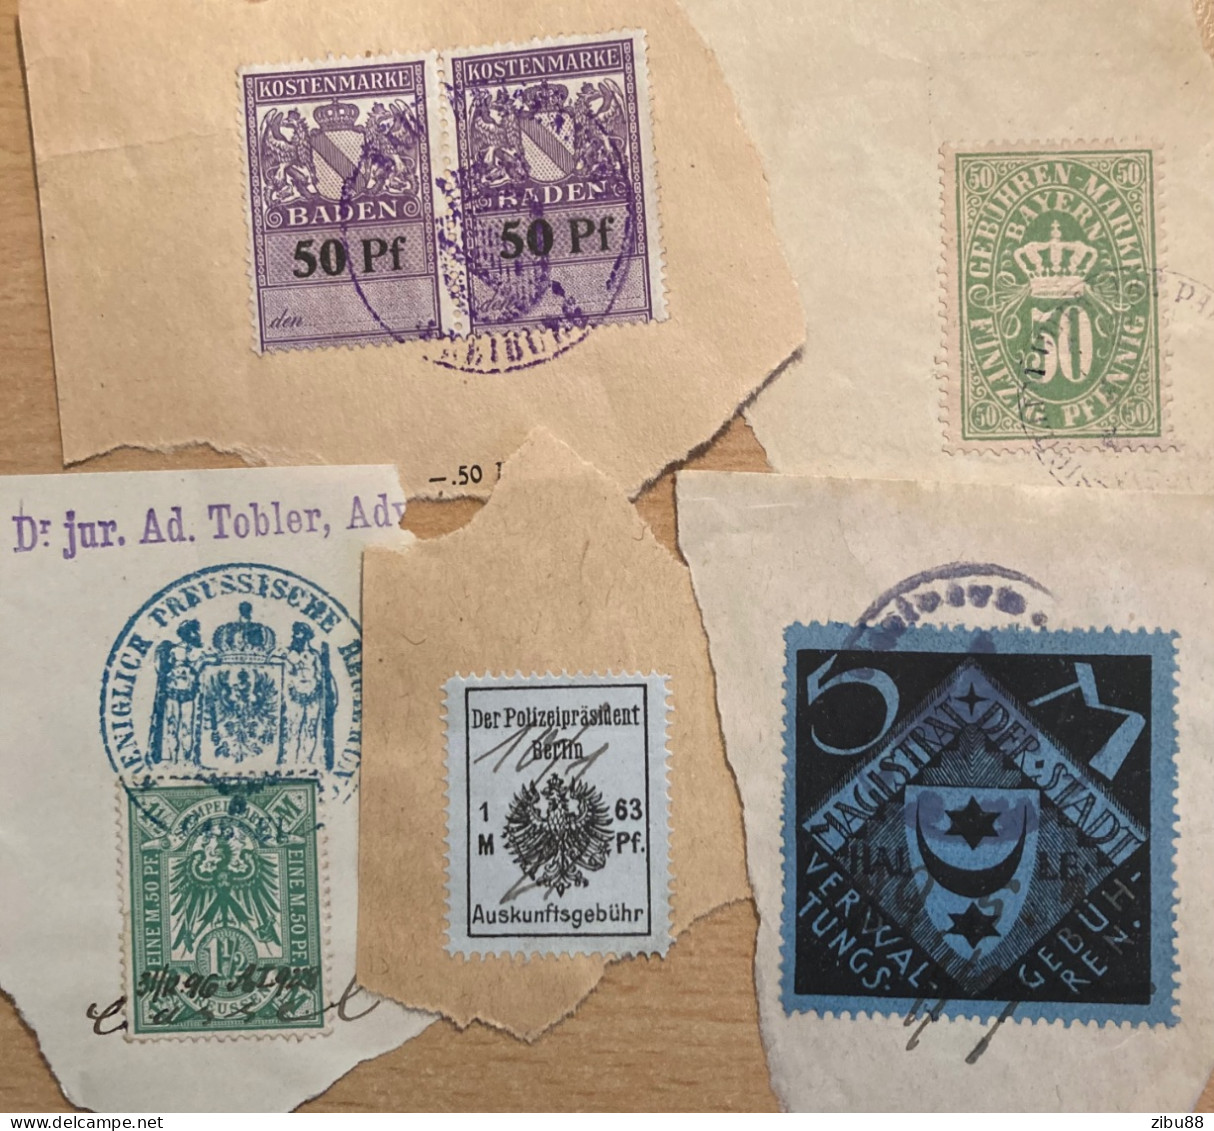 Fiskalmarken (Kostenmarke Baden, Gebührenmarke Bayern, Halle, Berlin, Stempelmarke Preussen - Revenue Stamps Germany - Sammlungen